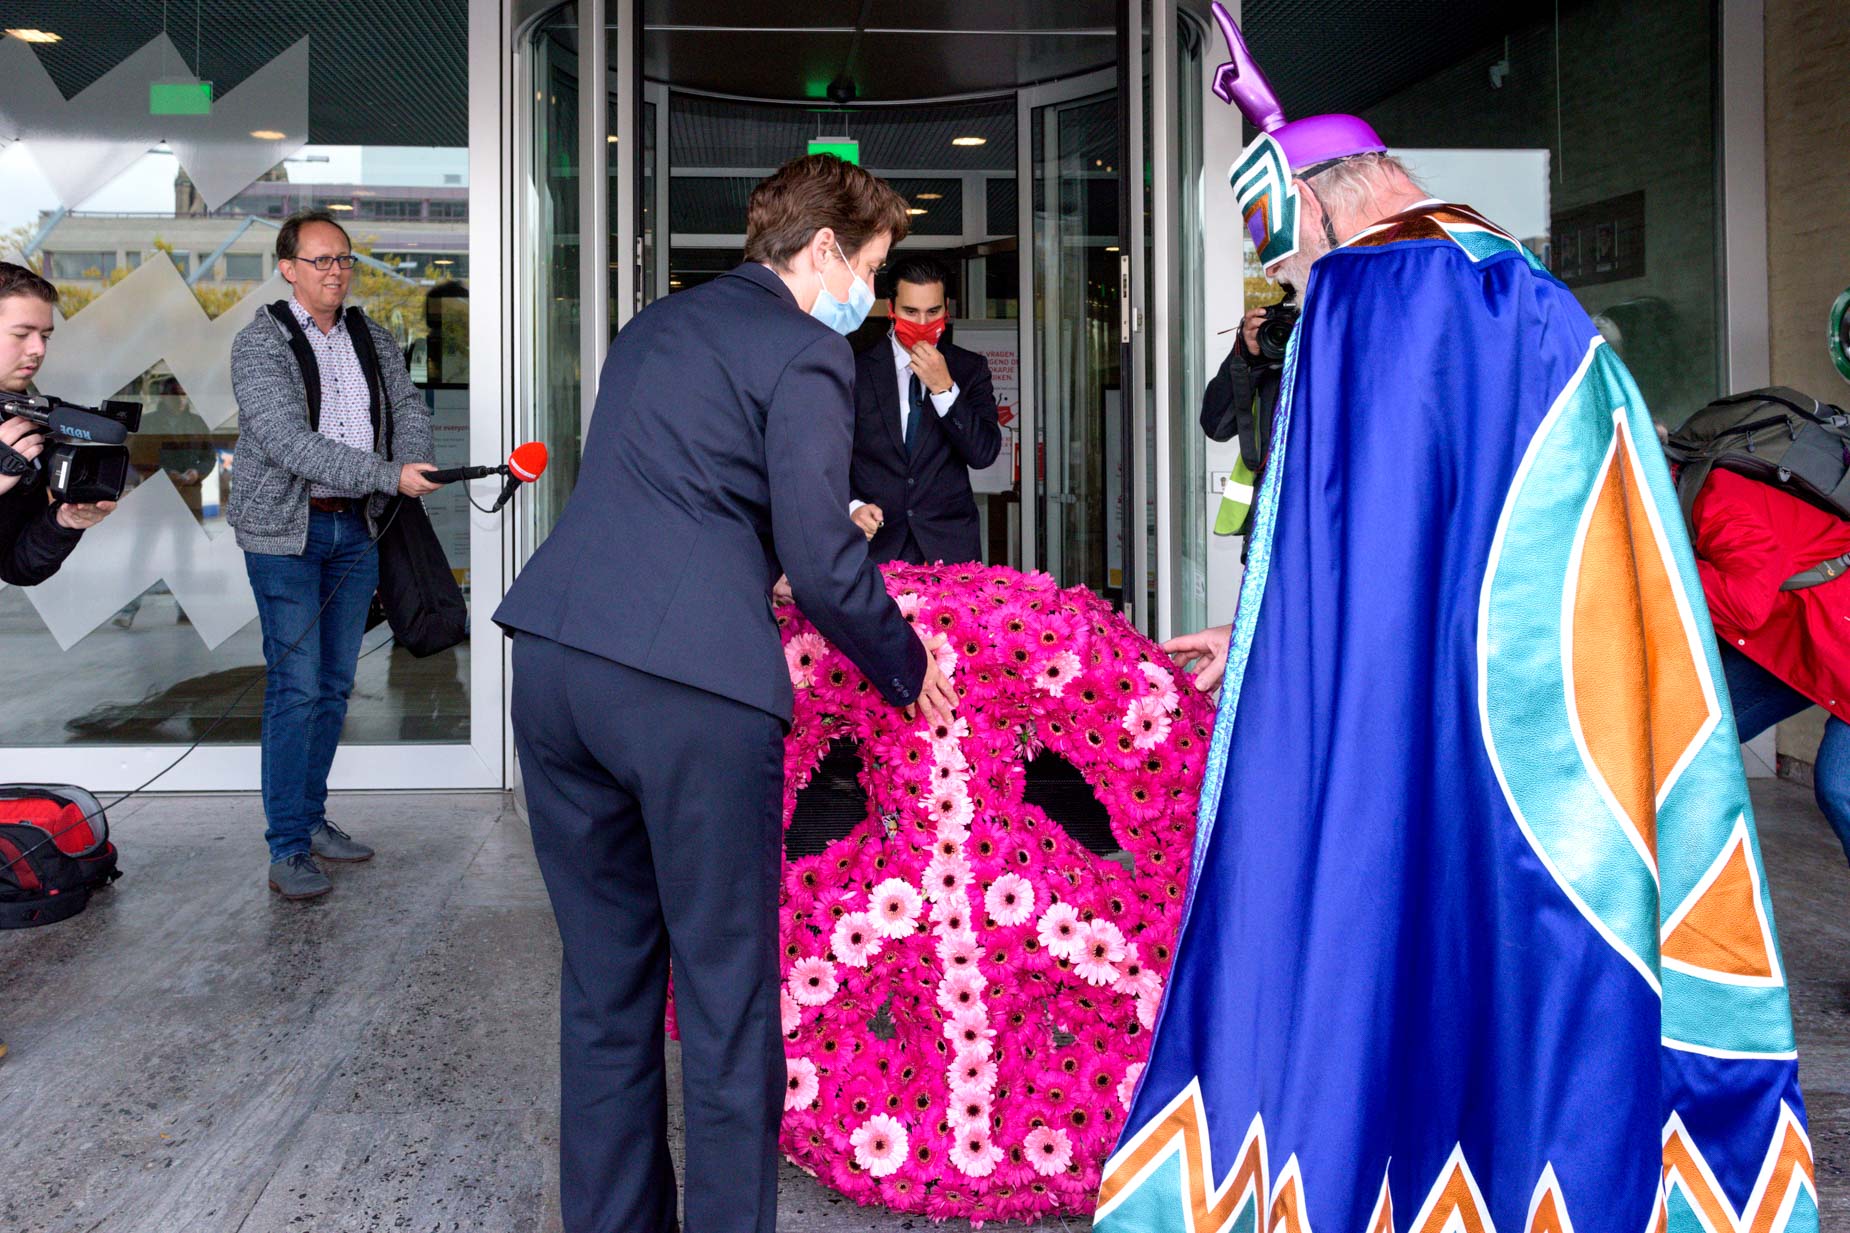 PEACEMAN bracht een vredeskrans naar burgemeester Jorritsma van Eindhoven | Sas Schilten Fotografie